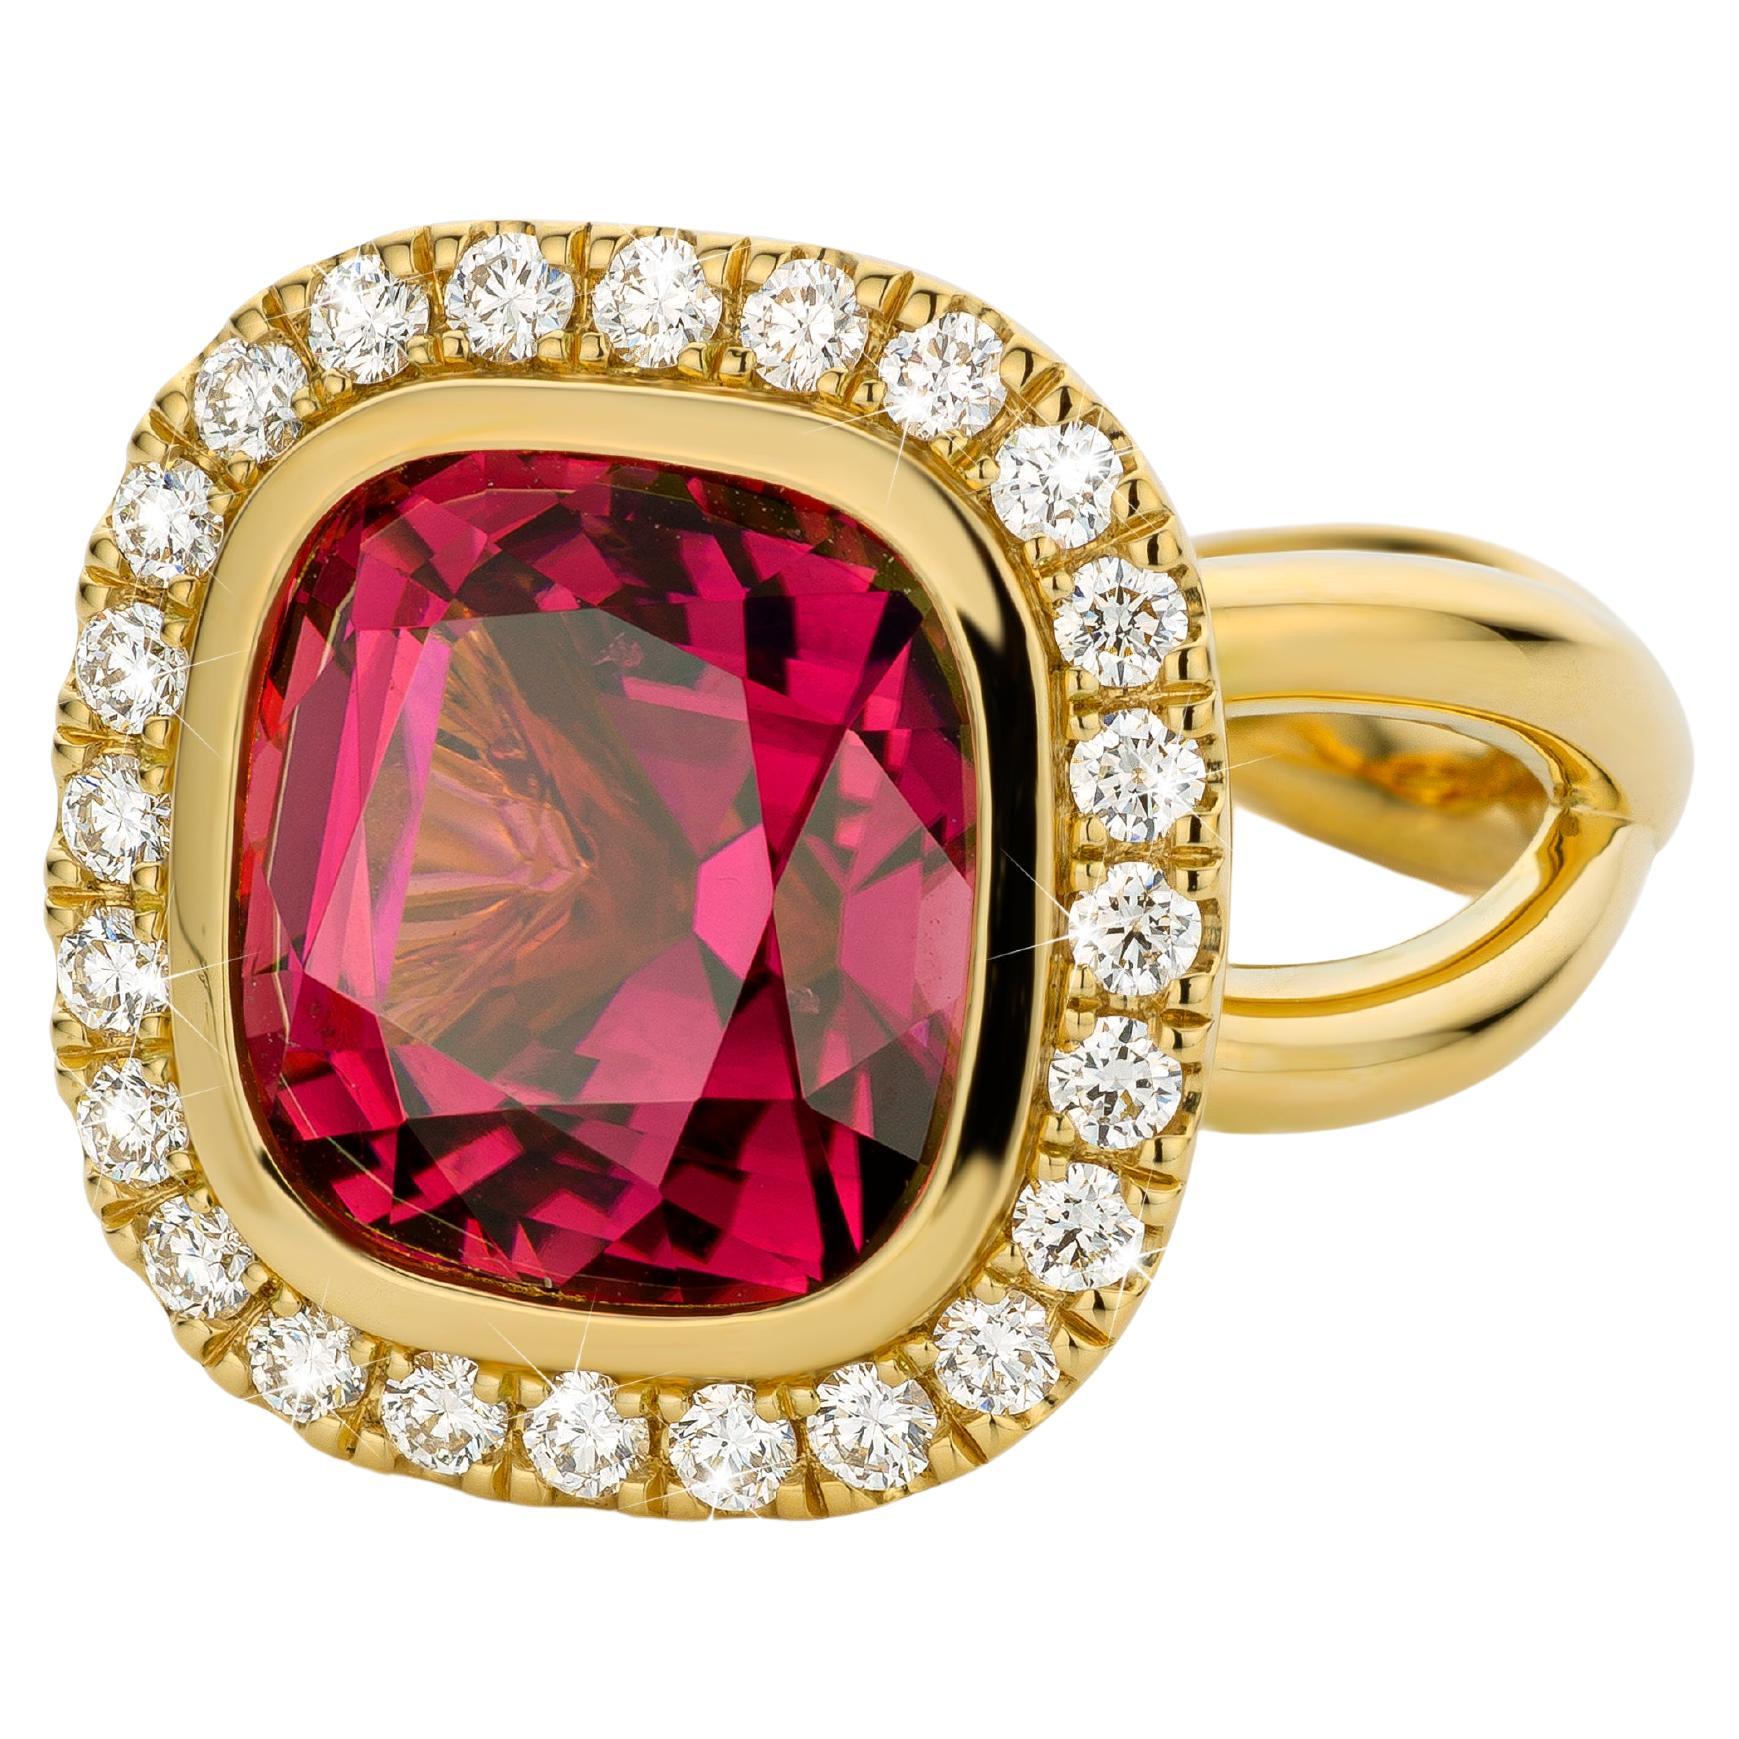 Bague en or jaune avec 24 diamants et tourmaline rose vif, de style ludique